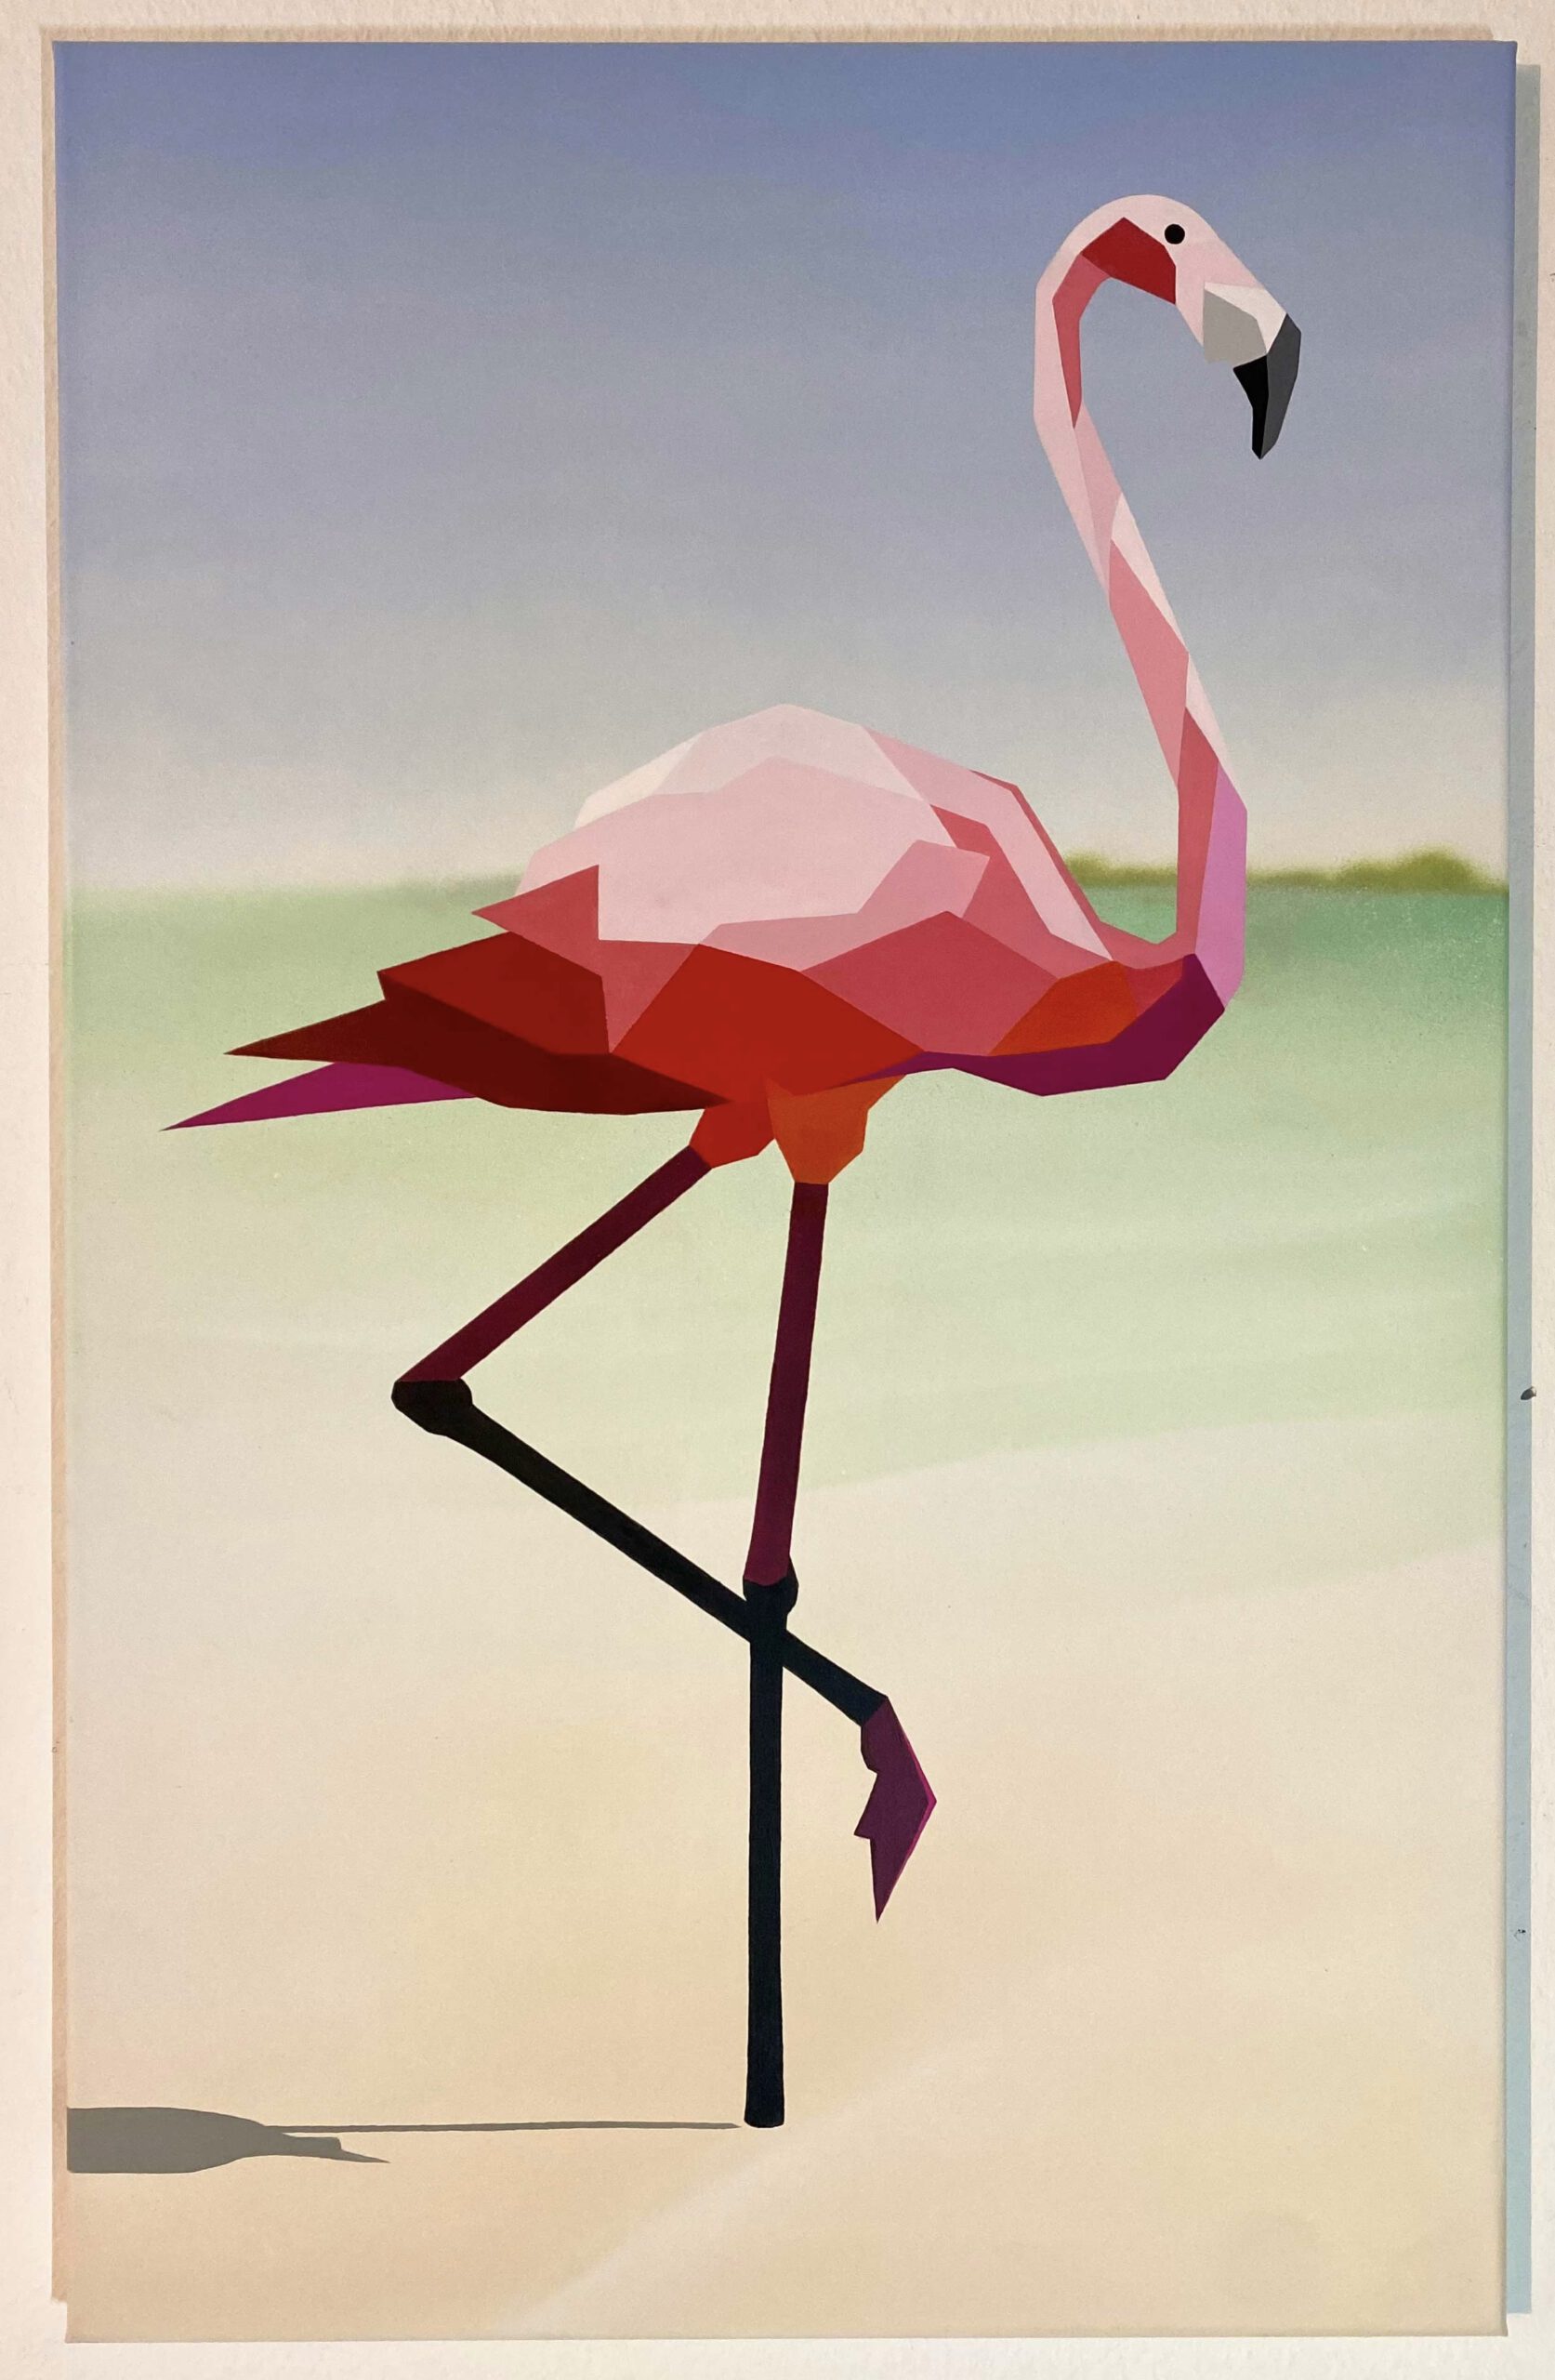 Flamingo, Ebrodelta“ 95 x 60 cm, Mixed media on canvas, Felix Jonas Rieger 2022